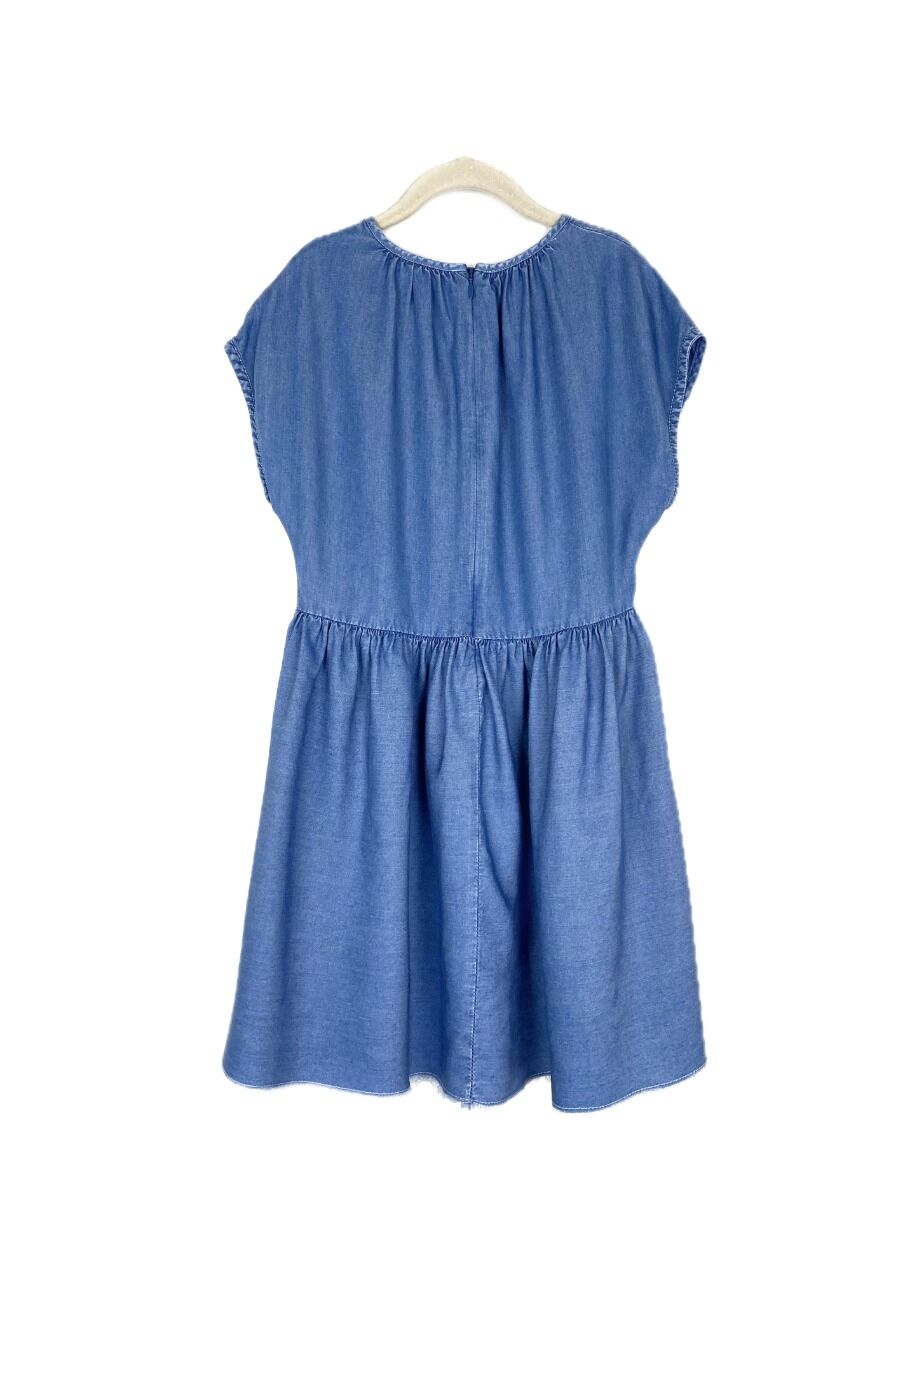 image 2 Детское платье голубого цвета с драпировкой